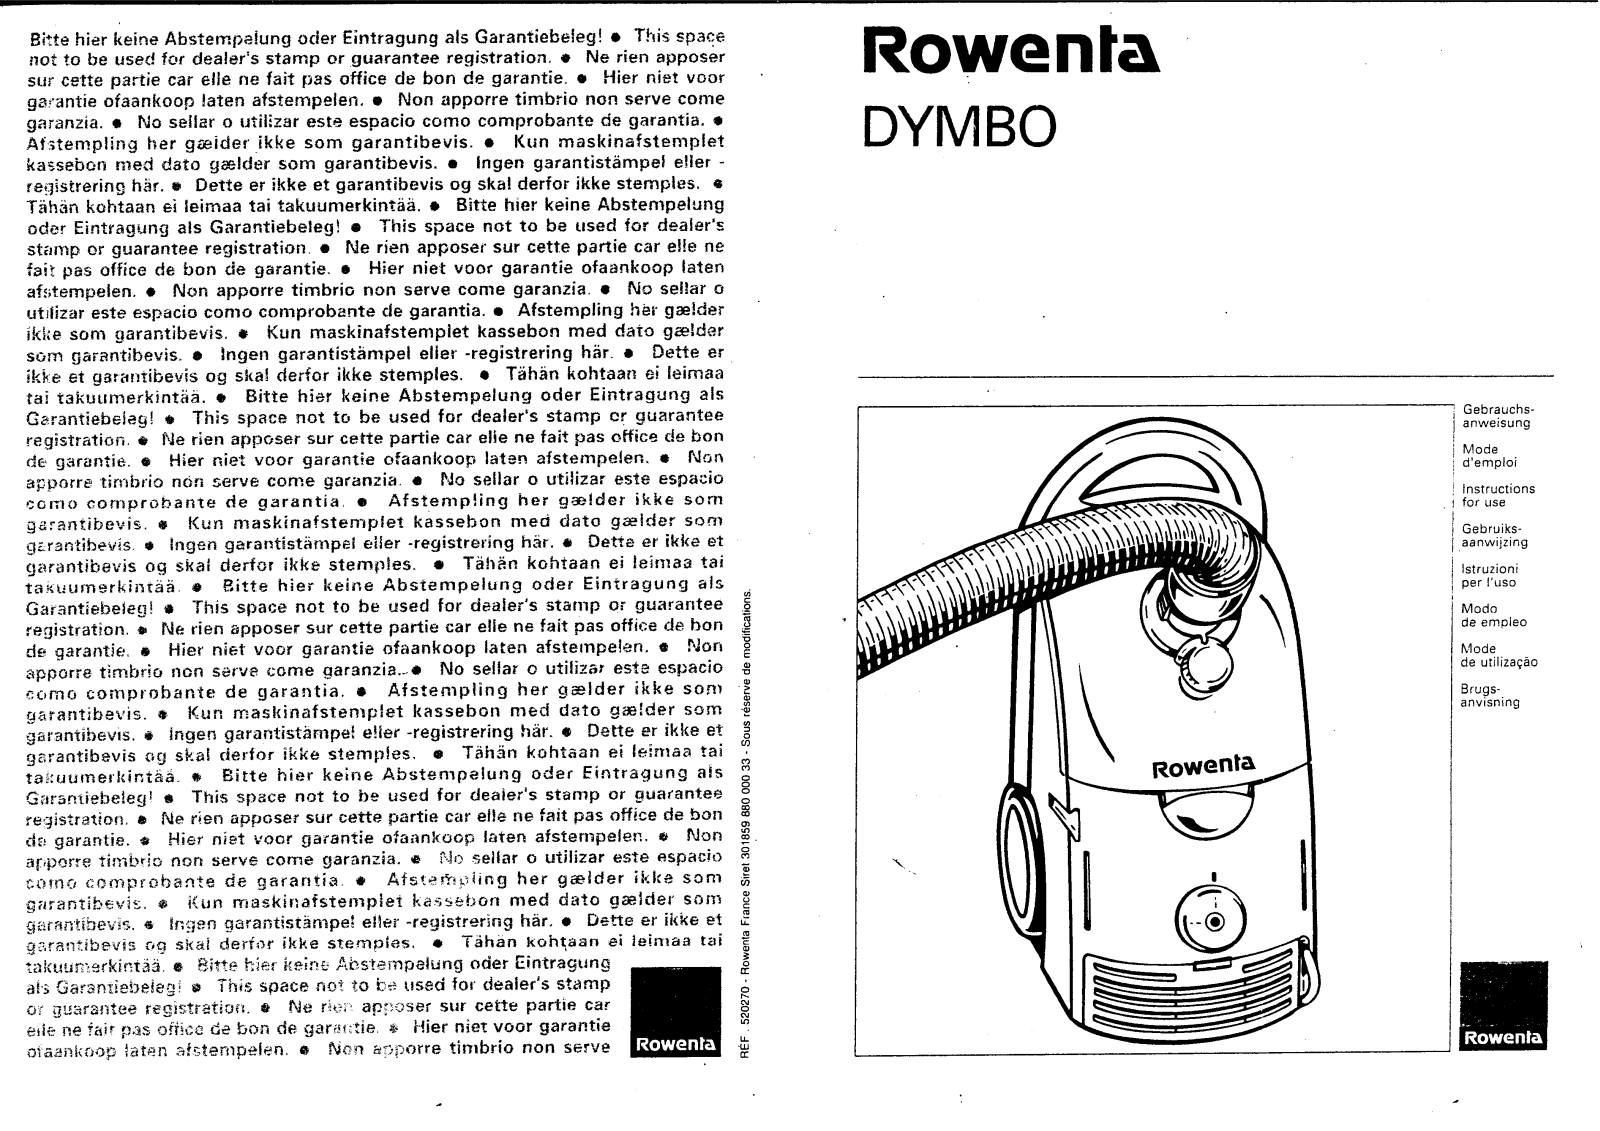 ROWENTA Dymbo User Manual